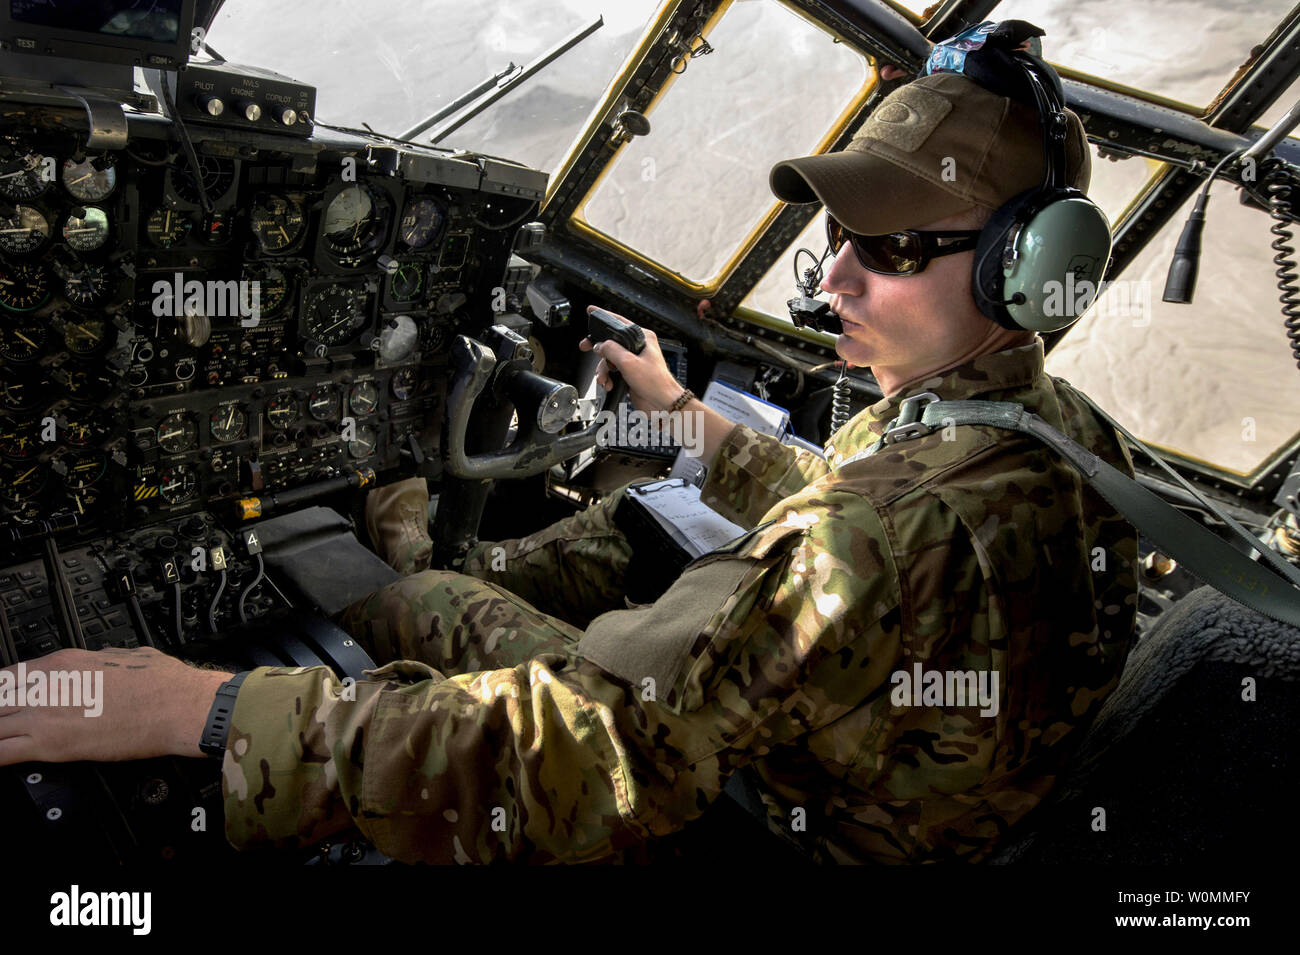 Us Air Force 1 Lt Brent Stevens, ein Pilot mit der Expeditionary 774th Airlift Squadron, fliegt eine C-130 Herkules Flugzeug in Richtung vorwärts Operating Base (FOB) Sharana, Provinz Paktika, Afghanistan, Sept. 28, 2013. Flieger mit der Einheit transportiert die letzte Ladung von FOB Sharana vor dem Befehl der Basis war für die afghanische Verteidigungsministerium übertragen. UPI/Master Sgt. B. Bloker/U.S. Air Force Stockfoto